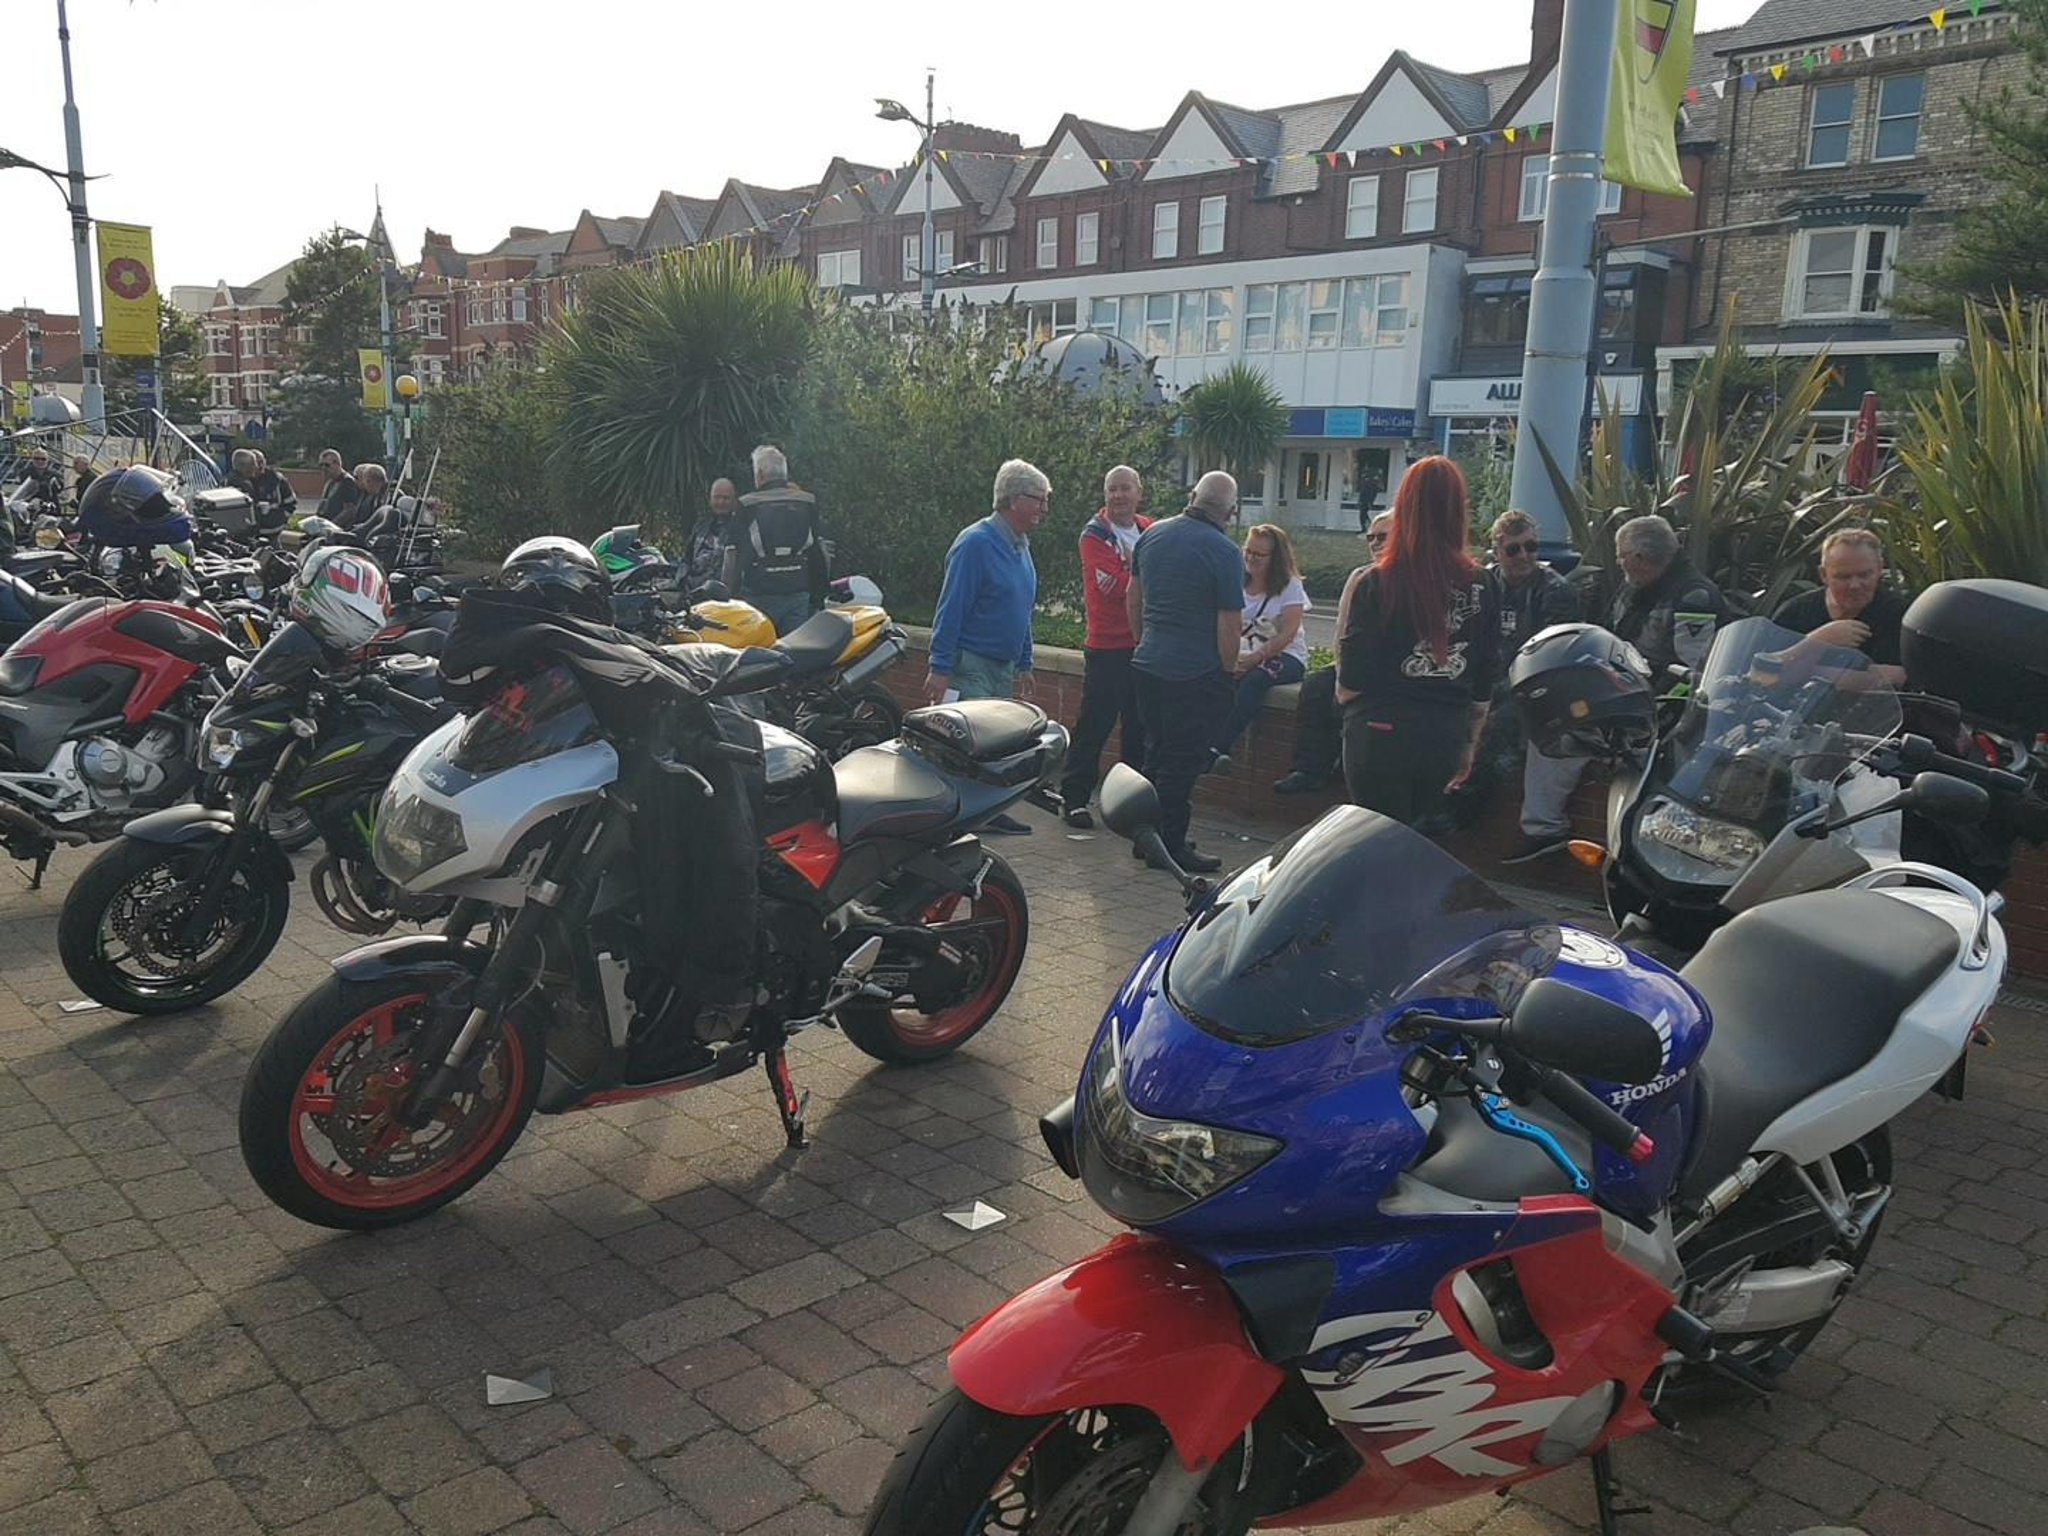 El entretenimiento eleva el estado de ánimo en una noche de motociclistas en St Annes